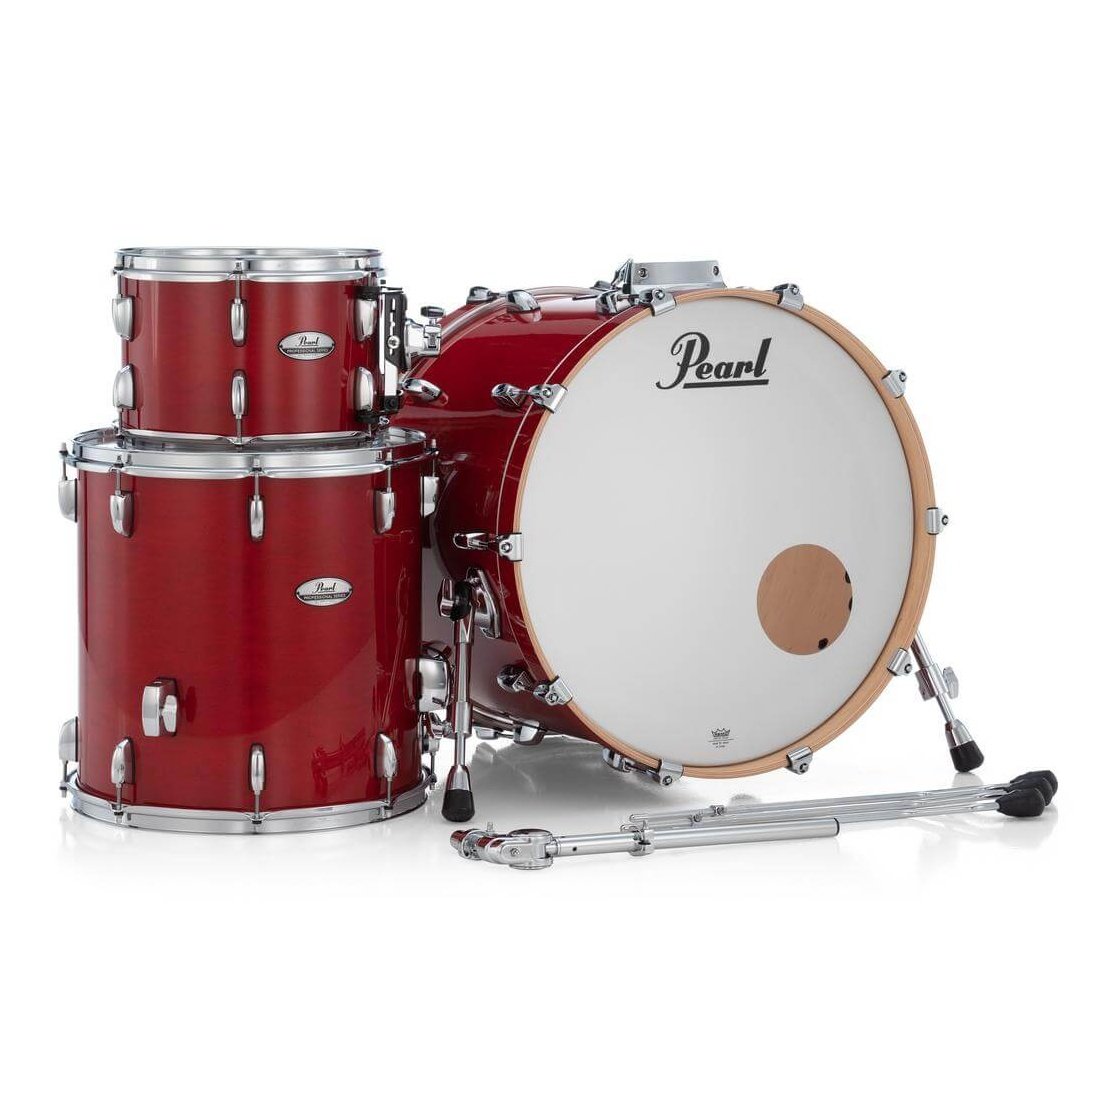 Pearl Professional Maple 3pc Drum Set 22/12/16 Sequoia Red